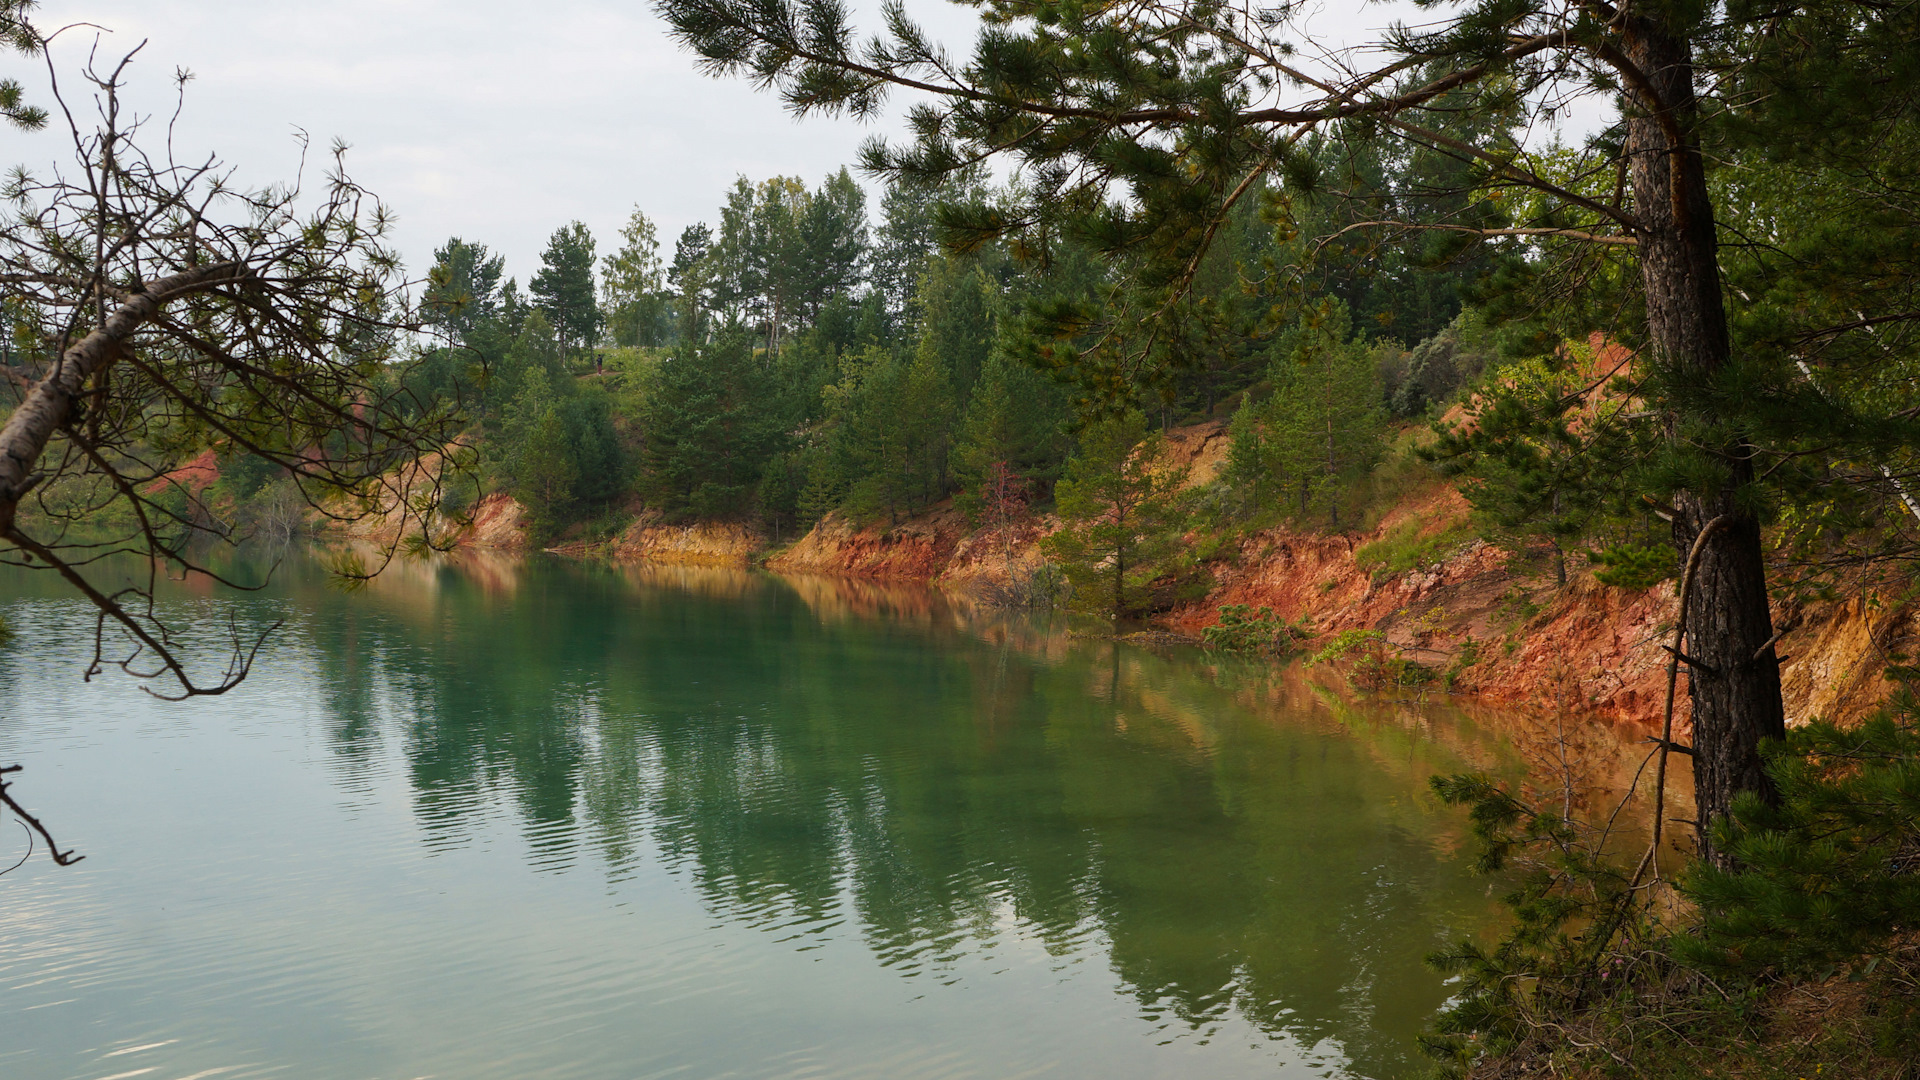 Озеро апрелька кемеровская область фото